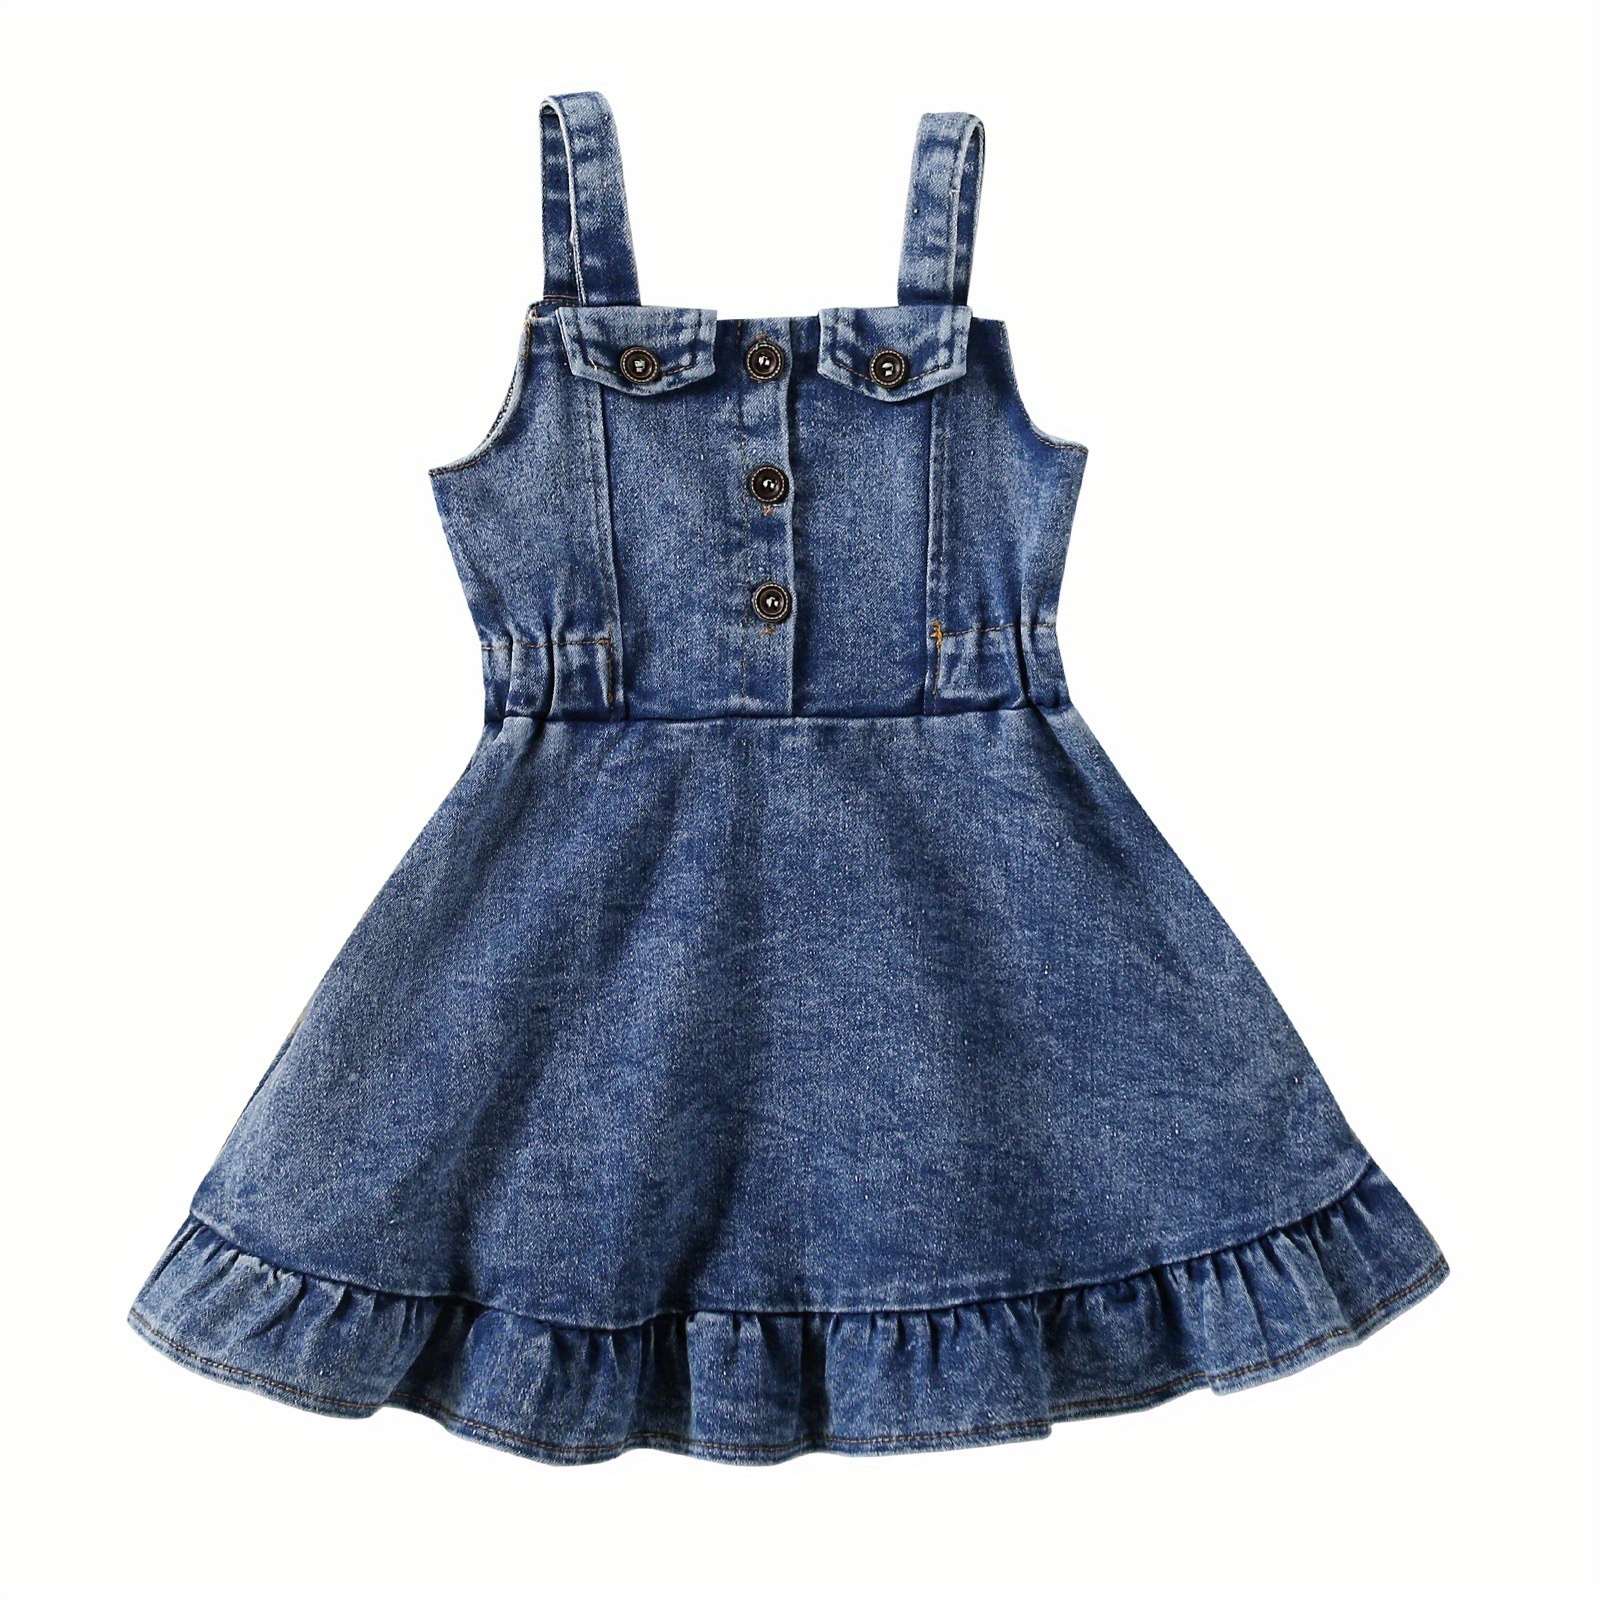 

Toddler Baby Girls Summer Denim Dress 6 12 18 24 Months 2t 3t 4t Fashion Sleeveless Button Down Ruffle Tank Dress